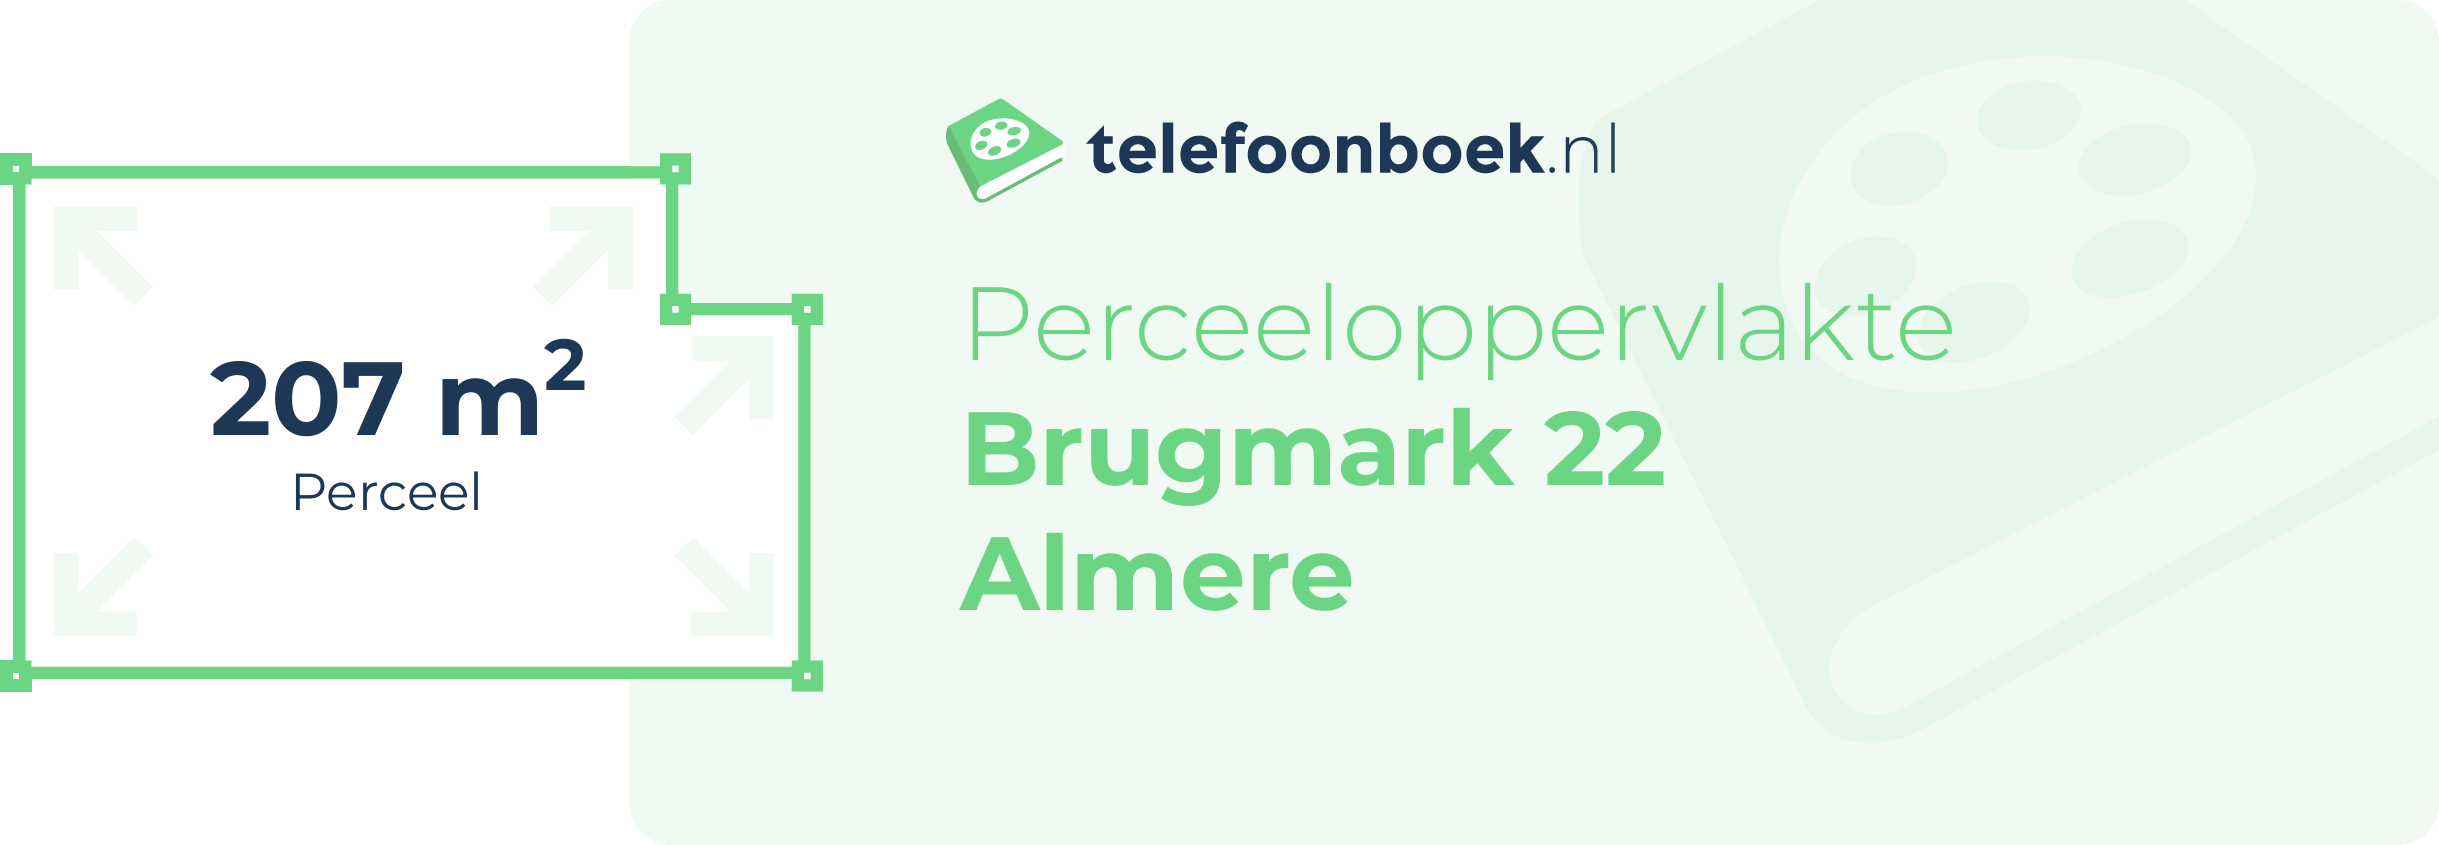 Perceeloppervlakte Brugmark 22 Almere